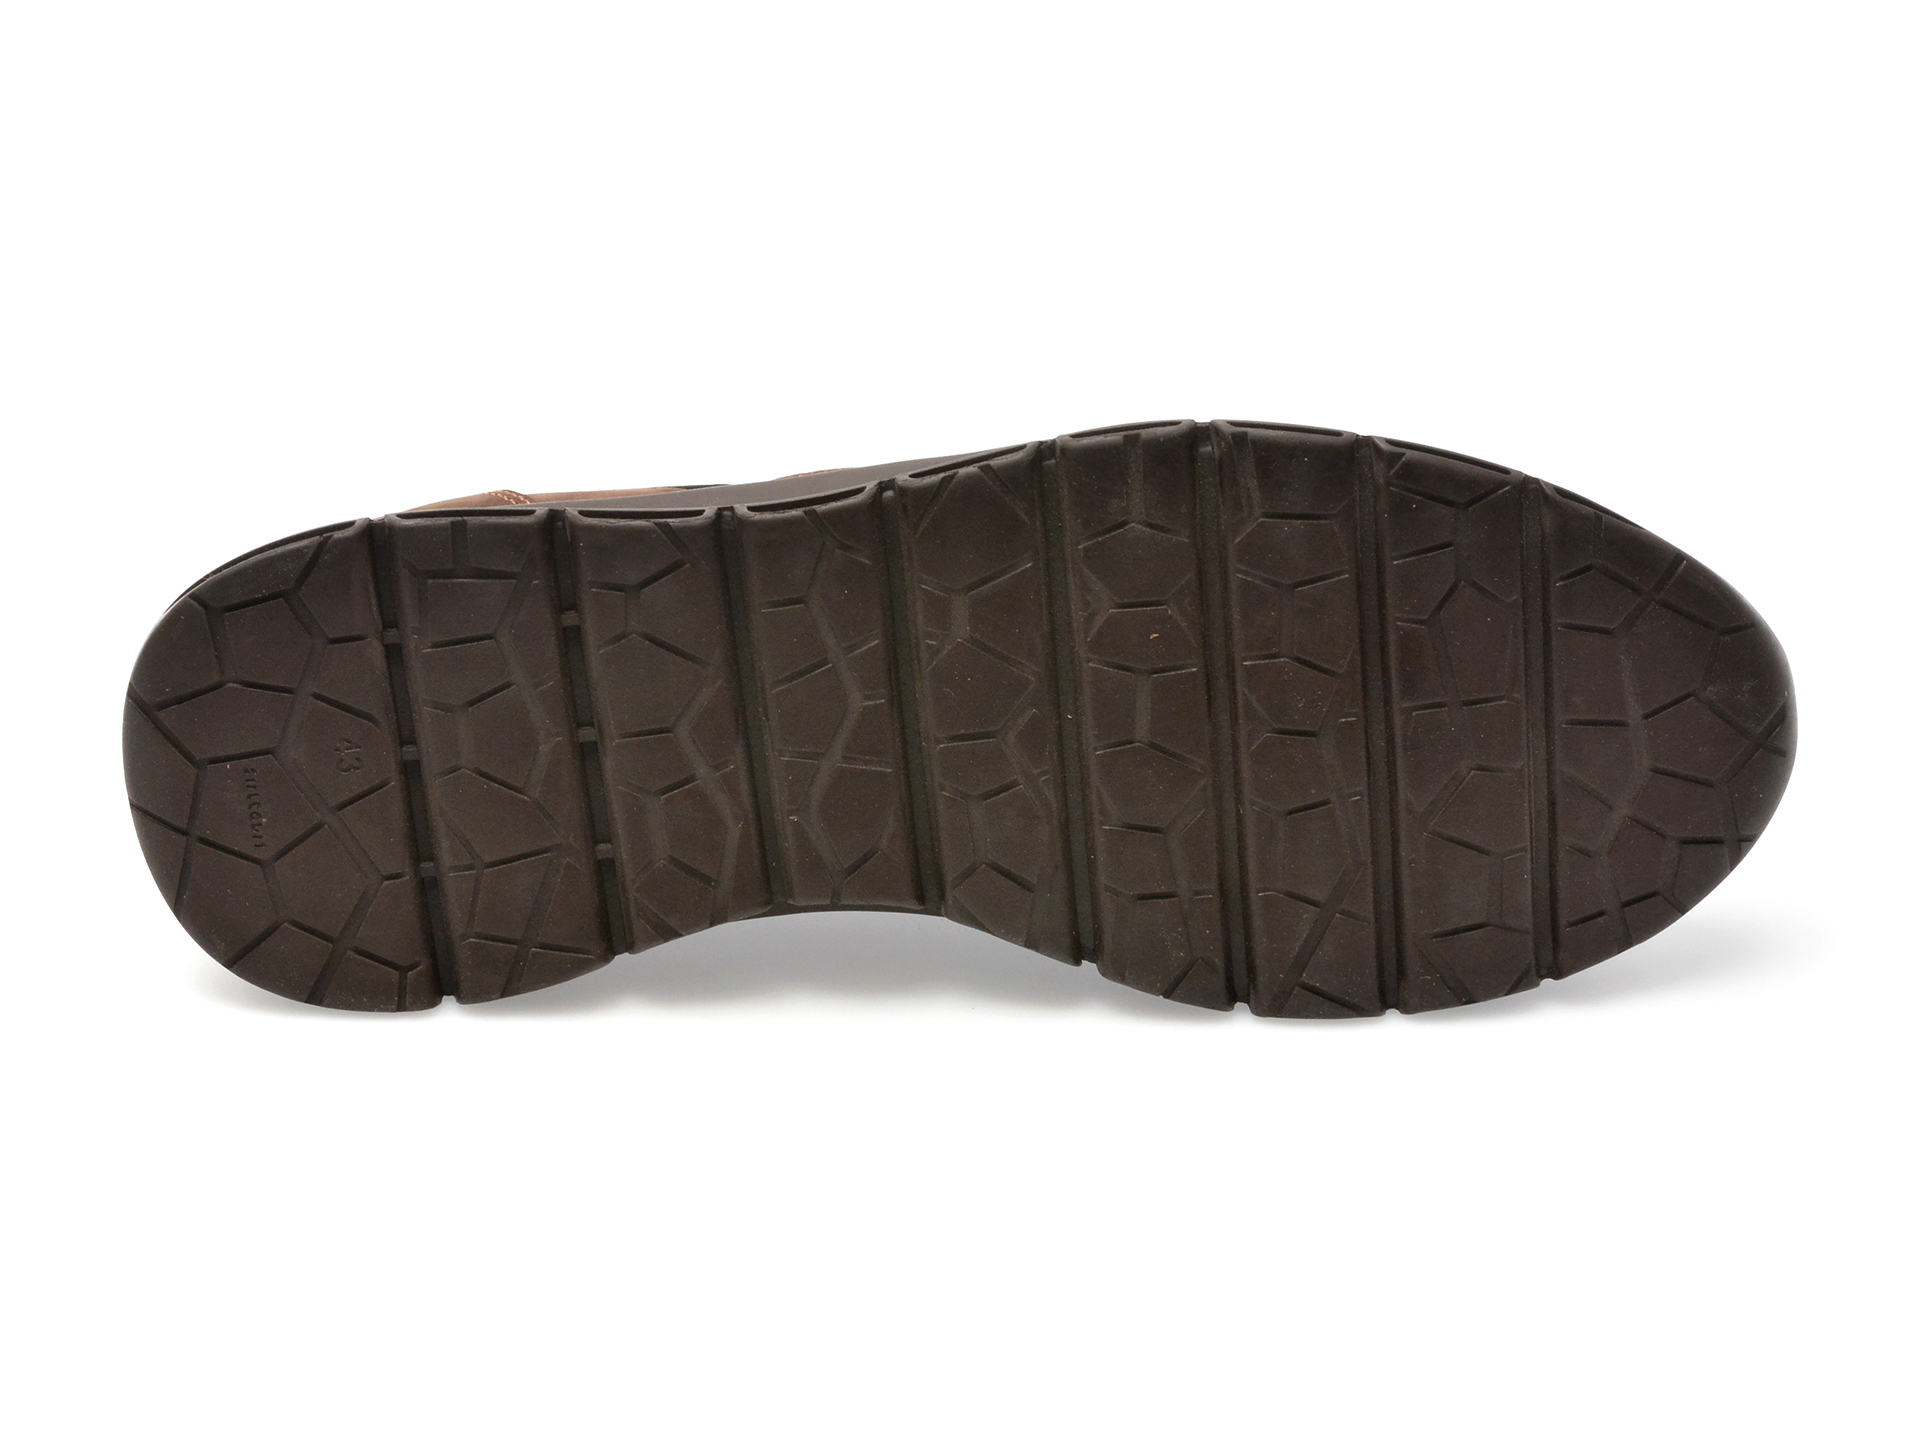 Pantofi OTTER maro, TUR46, din piele naturala